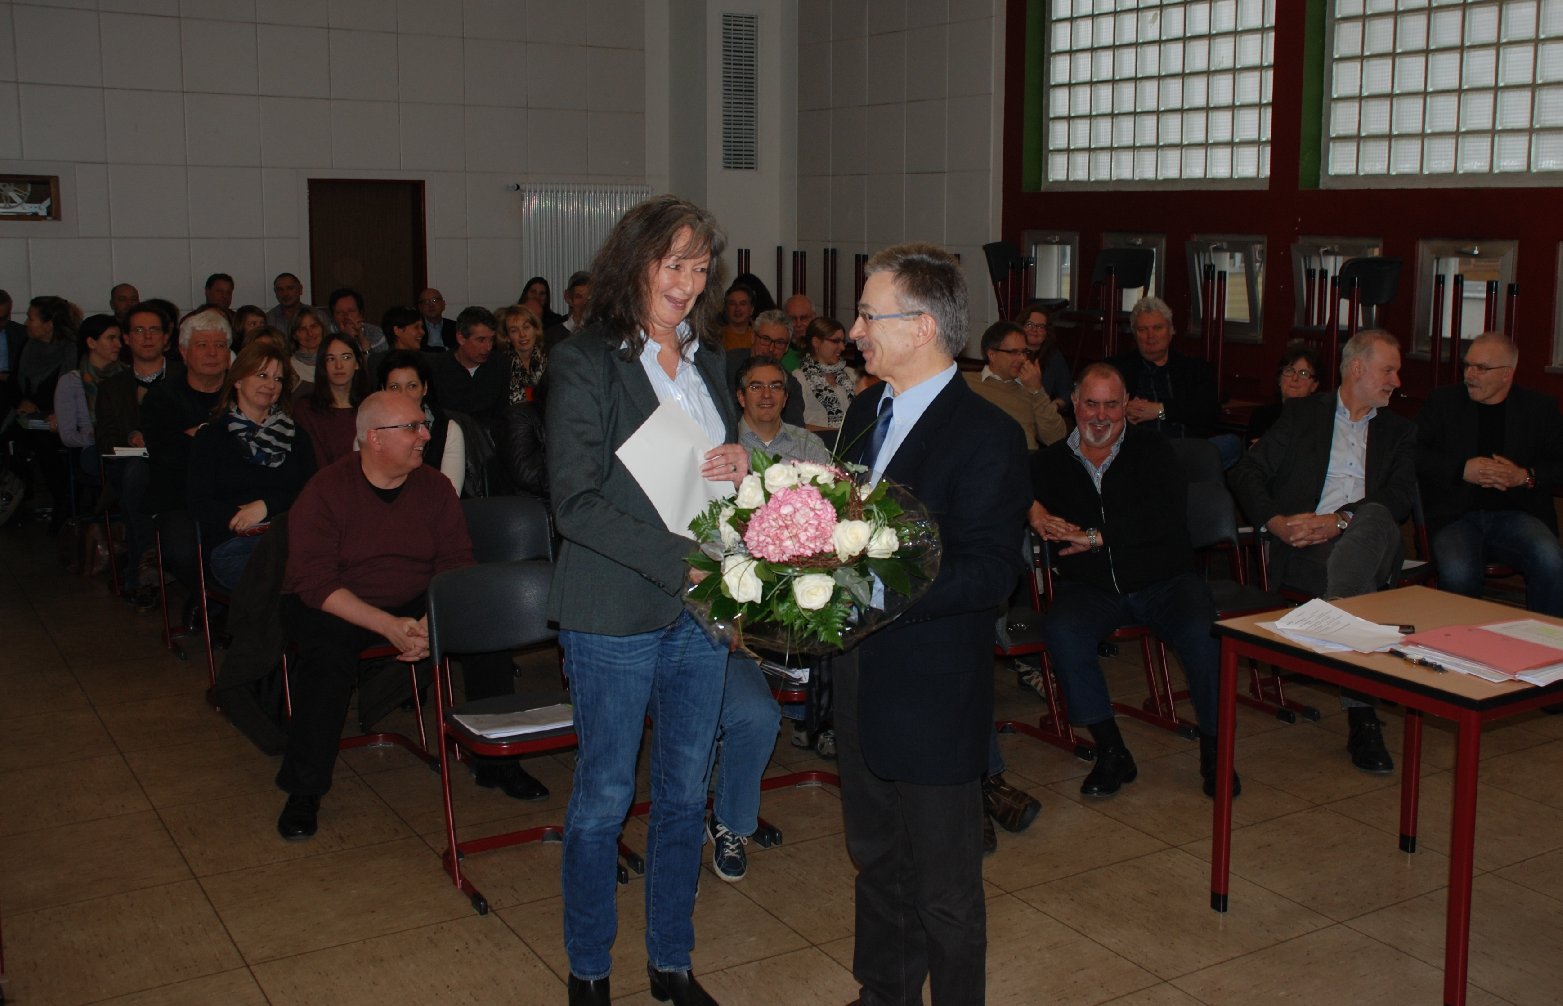 Mit lobenden Worten und einem Blumenstrauß verabschiedete Schulleiter Ernst Gamber Lucia Pietrulla aus dem Schuldienst. Foto: BBS Landau